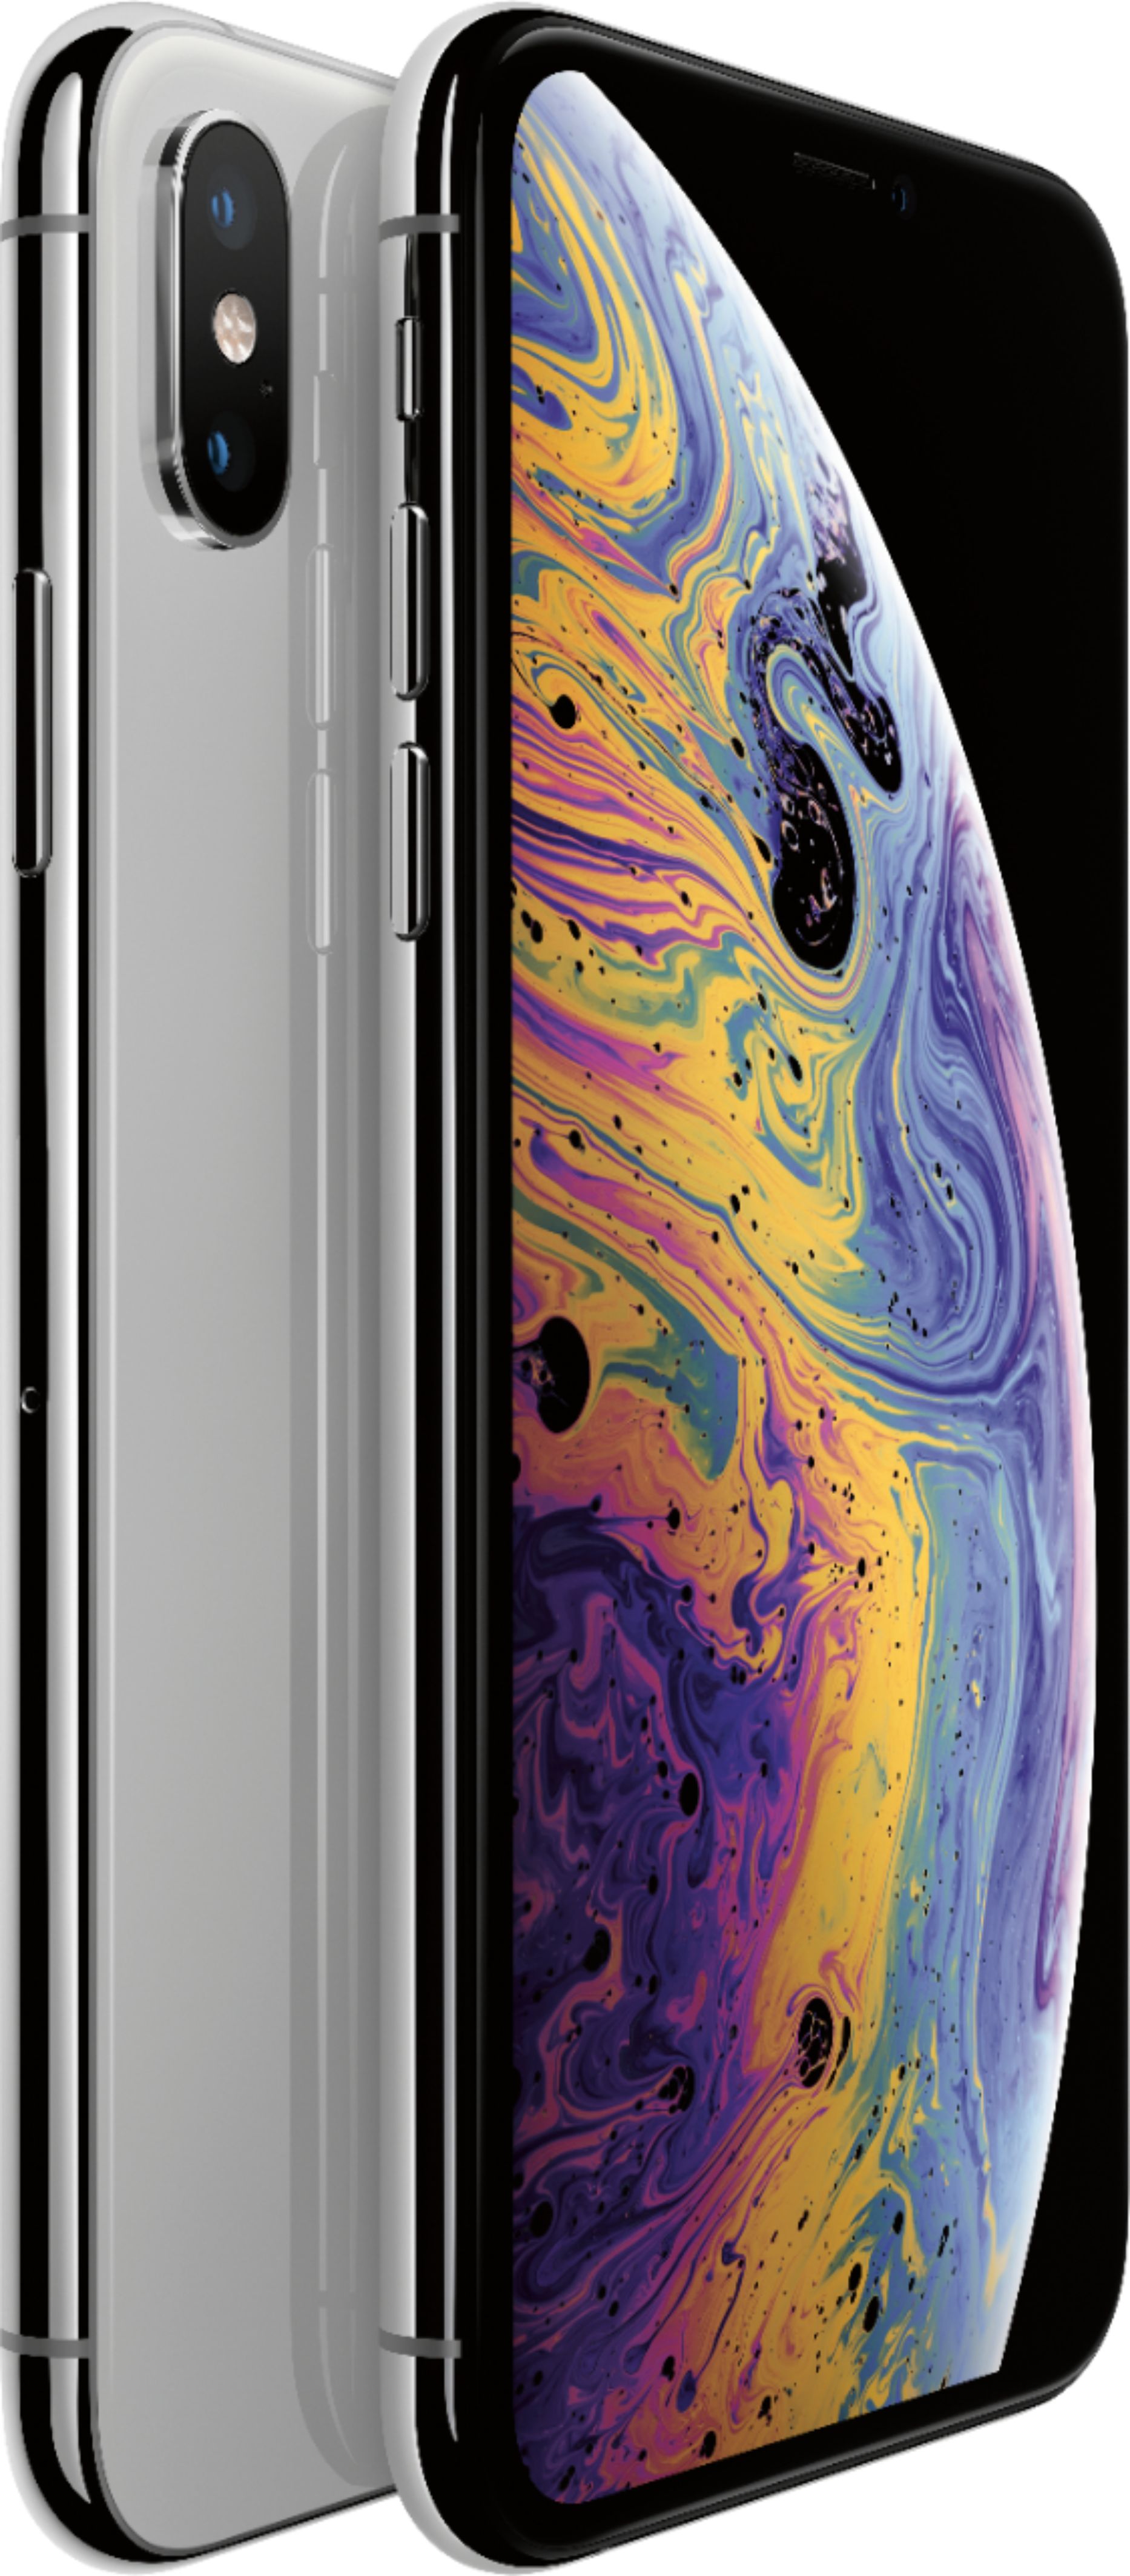 スマートフォン/携帯電話 携帯電話本体 Best Buy: Apple iPhone XS 64GB Silver (AT&T) MT952LL/A